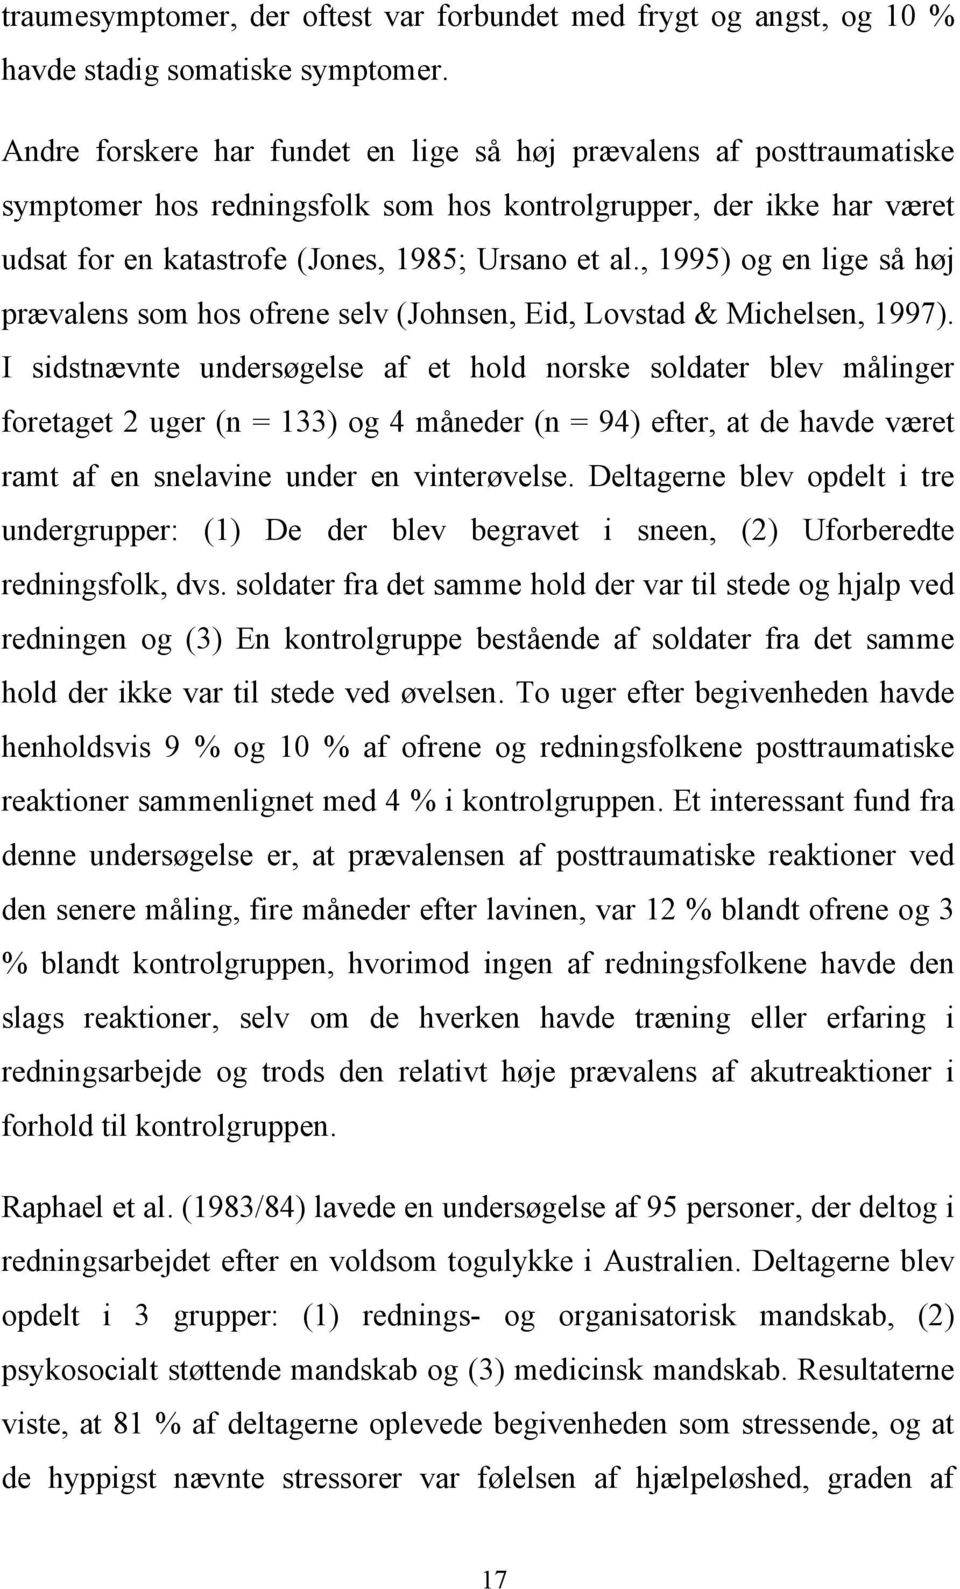 , 1995) og en lige så høj prævalens som hos ofrene selv (Johnsen, Eid, Lovstad & Michelsen, 1997).